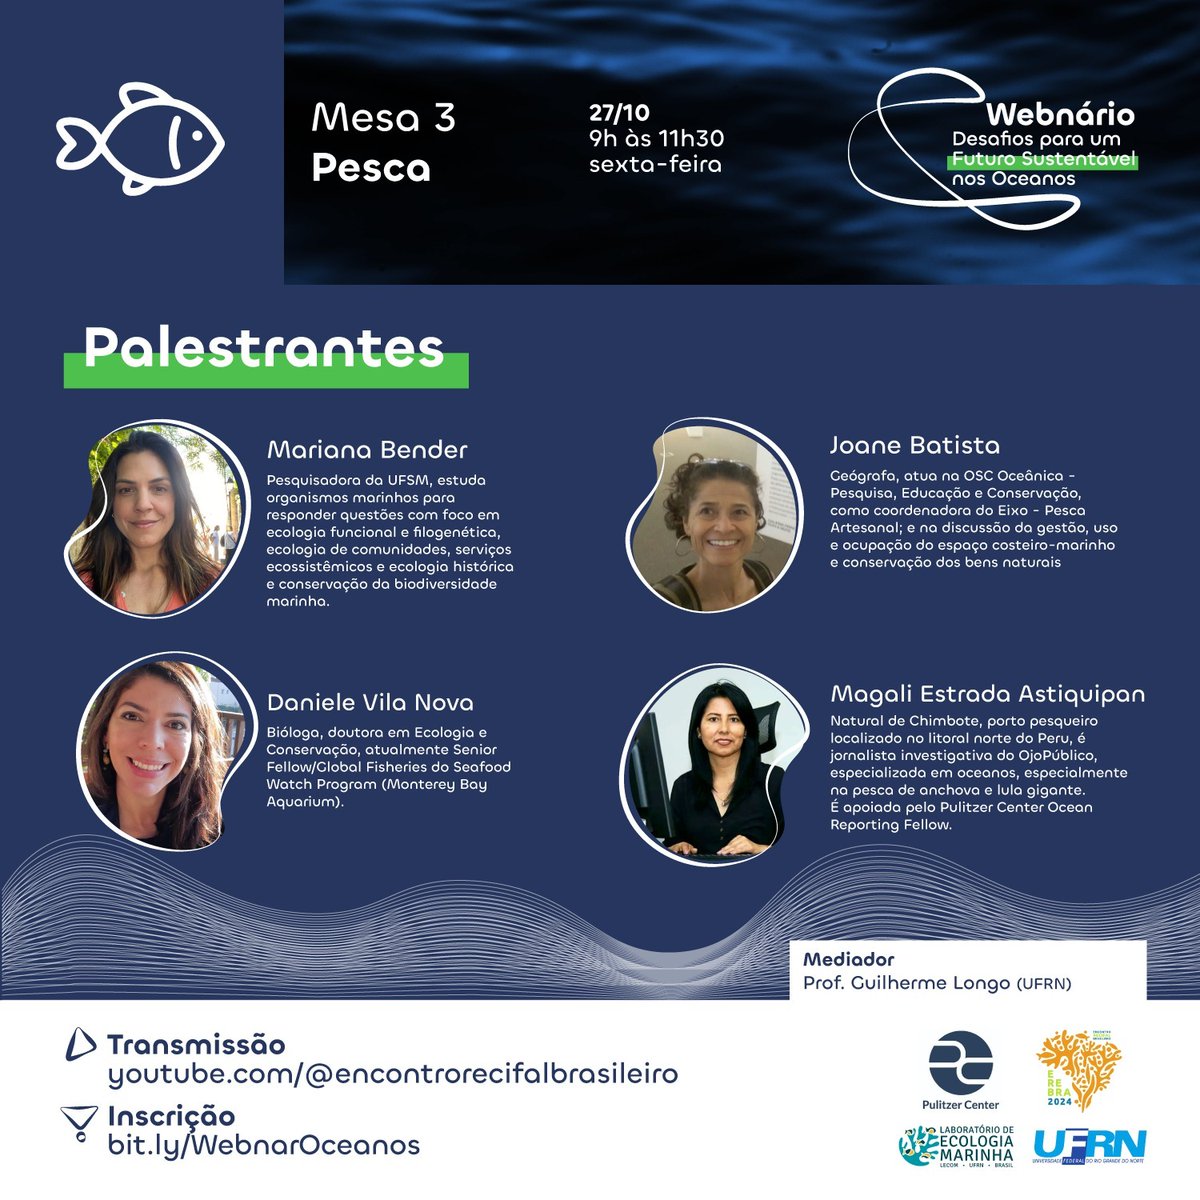 📢Desafios para um Futuro Sustentável nos Oceanos. Webinar propõe debates entre jornalistas, pesquisadores e lideranças para discutir o uso e futuro dos oceanos. Confira a programação e inscreva-se! 👇